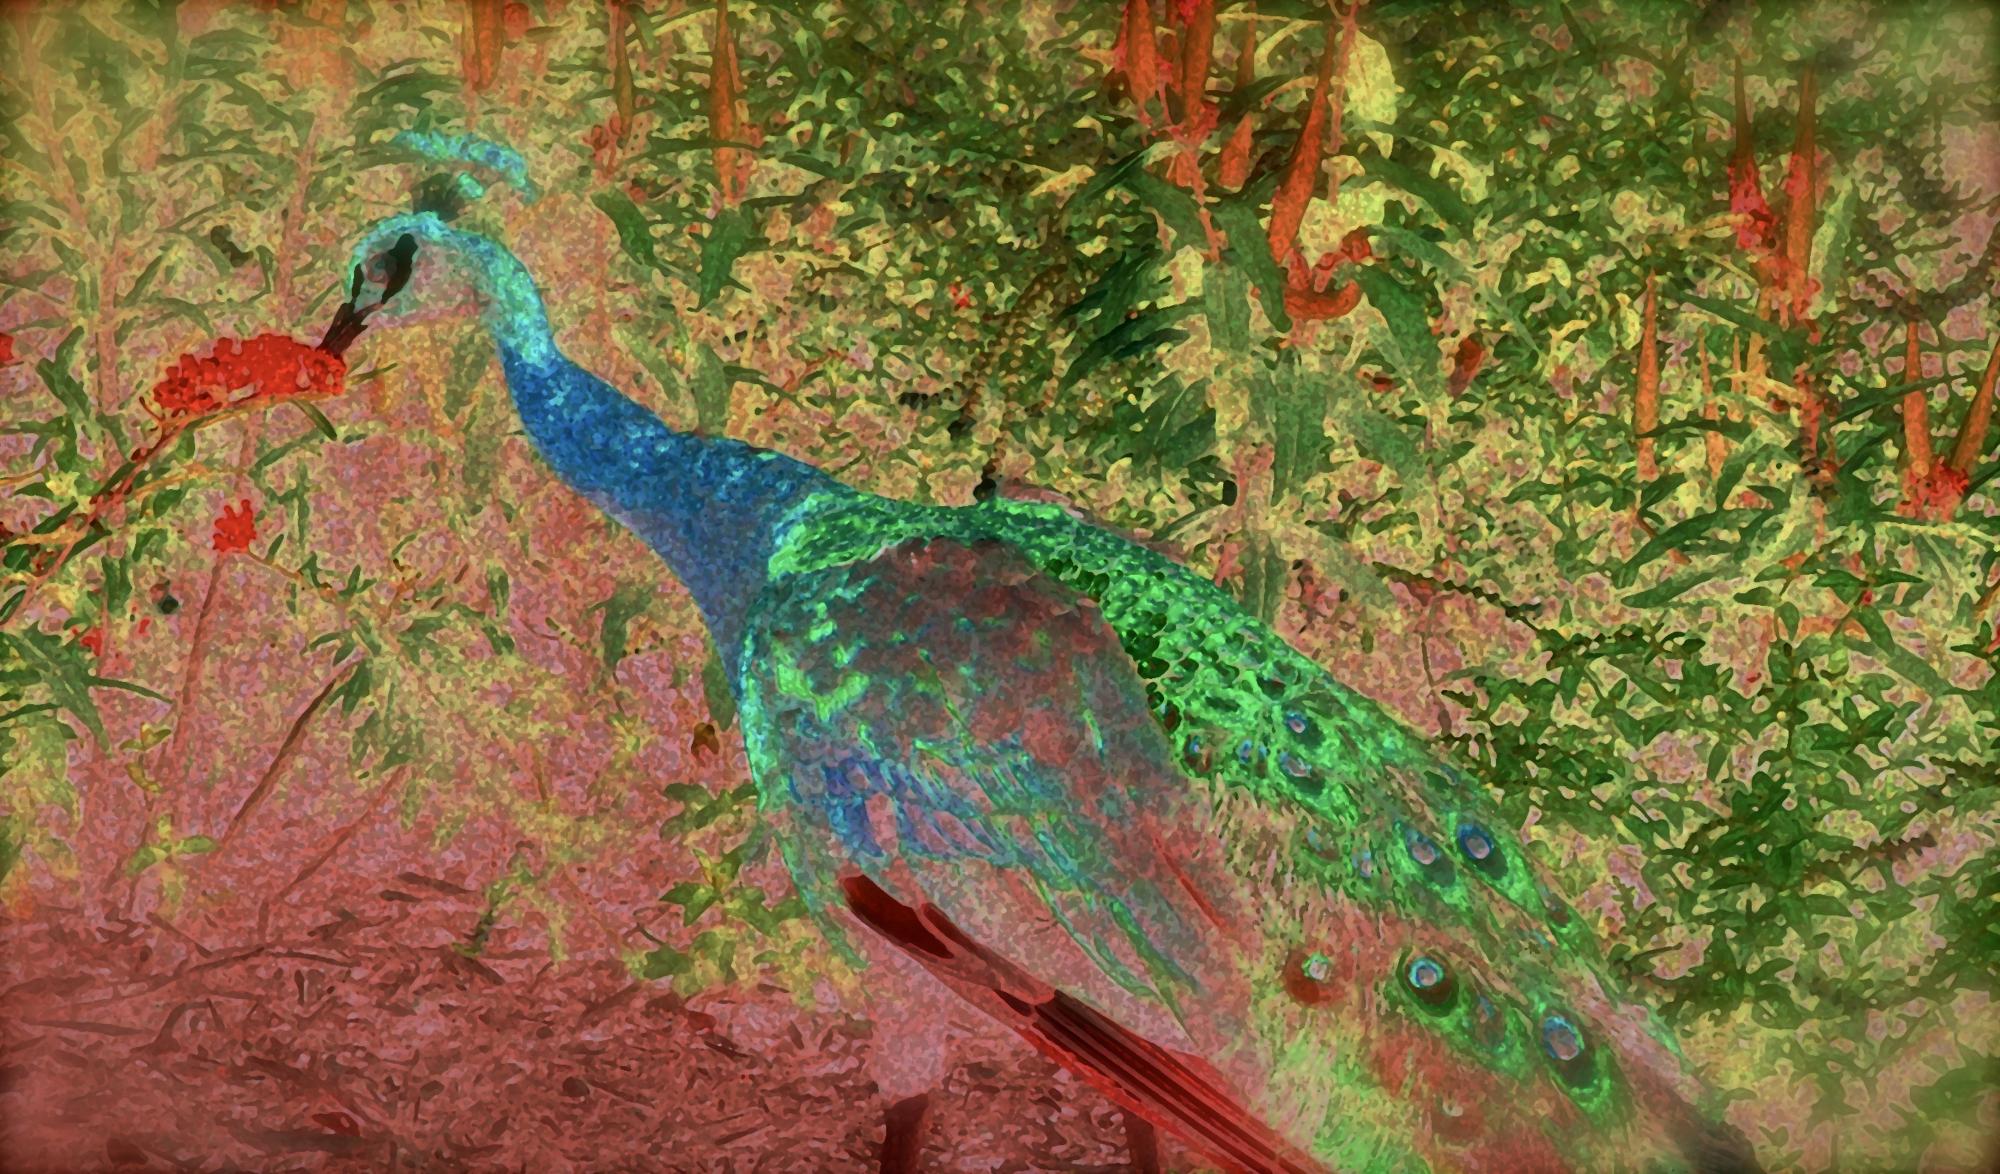 Mixed Media of peacock.